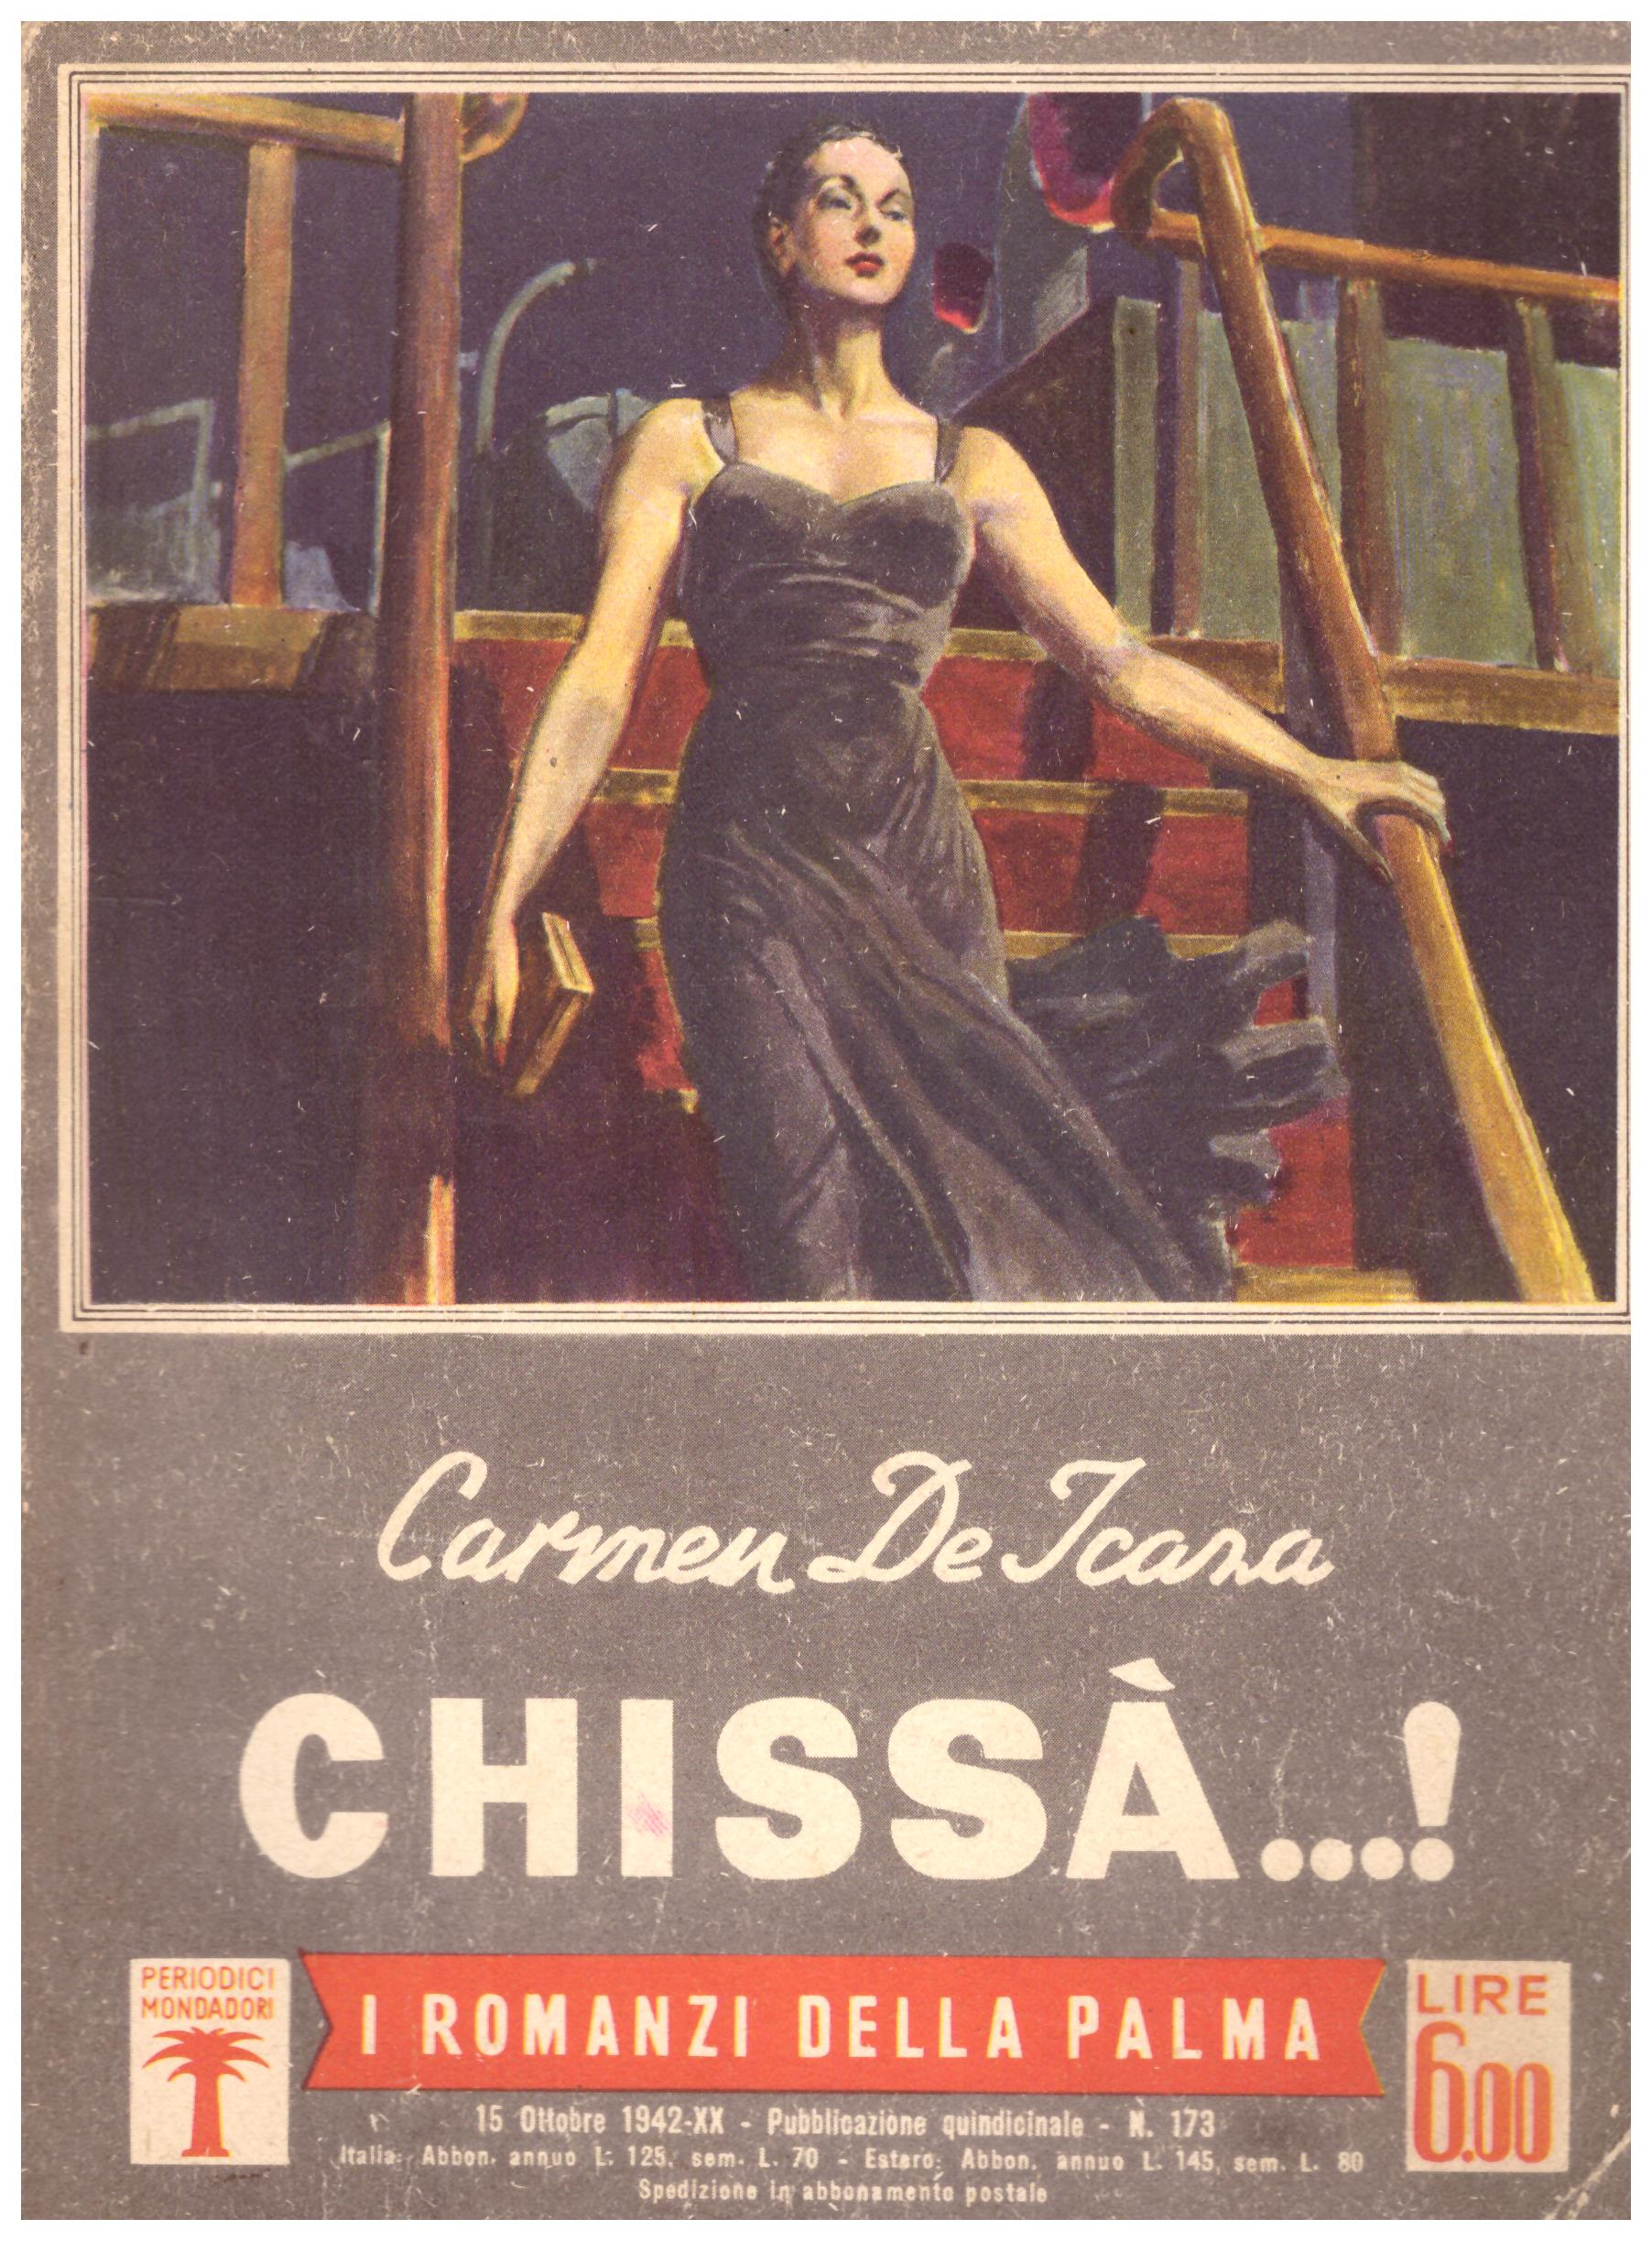 Titolo: I romanzi della palma, Chissà...! Autore: Carmen De Icaza  Editore: periodici mondadori, 15 ottobre 1942